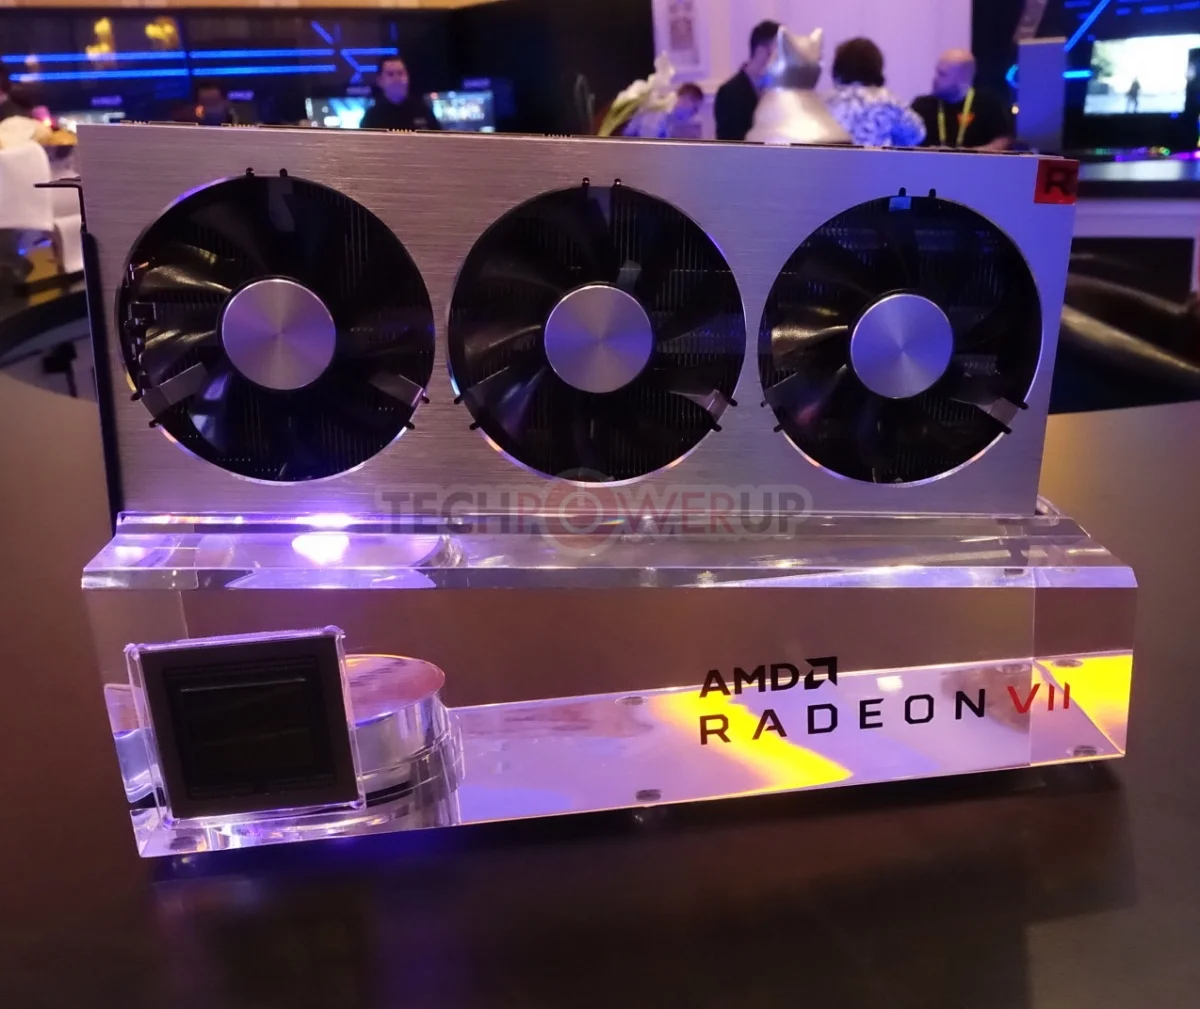 Опубликованы результаты официальных тестов видеокарты AMD Radeon VII - фото 2